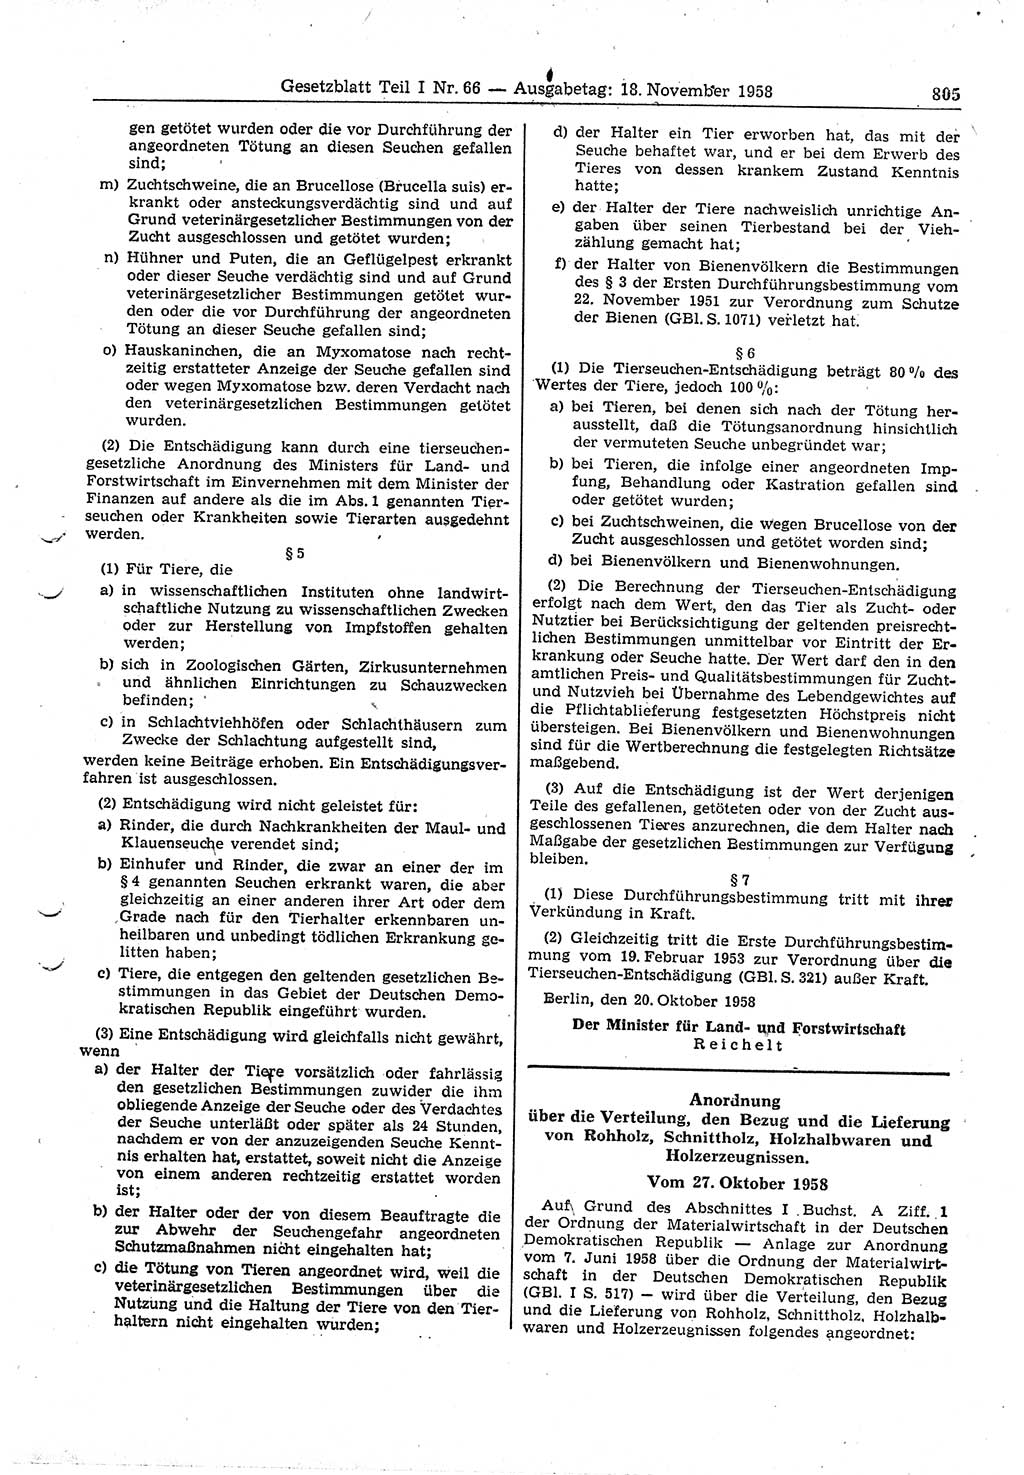 Gesetzblatt (GBl.) der Deutschen Demokratischen Republik (DDR) Teil Ⅰ 1958, Seite 805 (GBl. DDR Ⅰ 1958, S. 805)